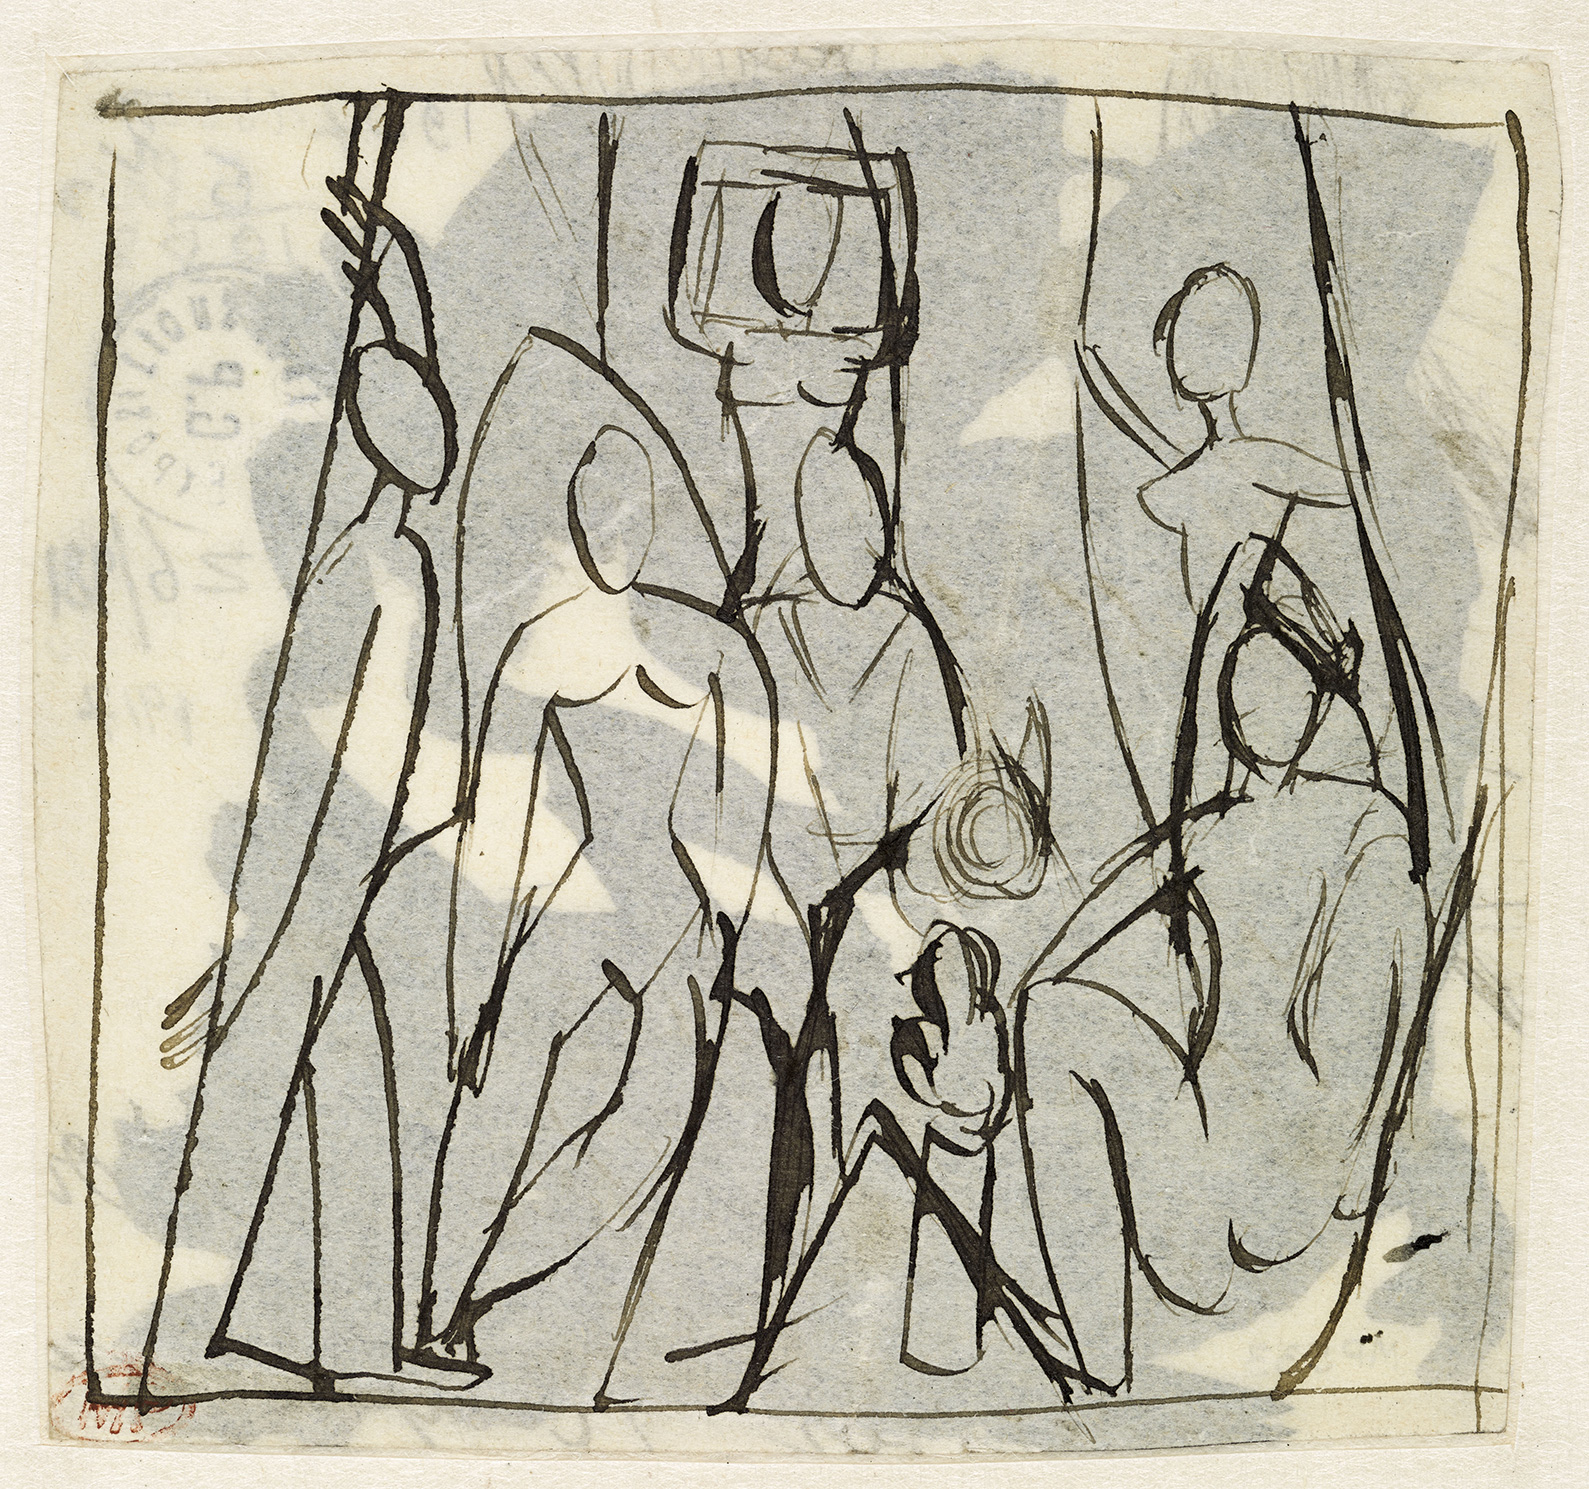 Picasso - Etude pour "Les Demoiselles d'Avignon" - MP533 - 16-537253